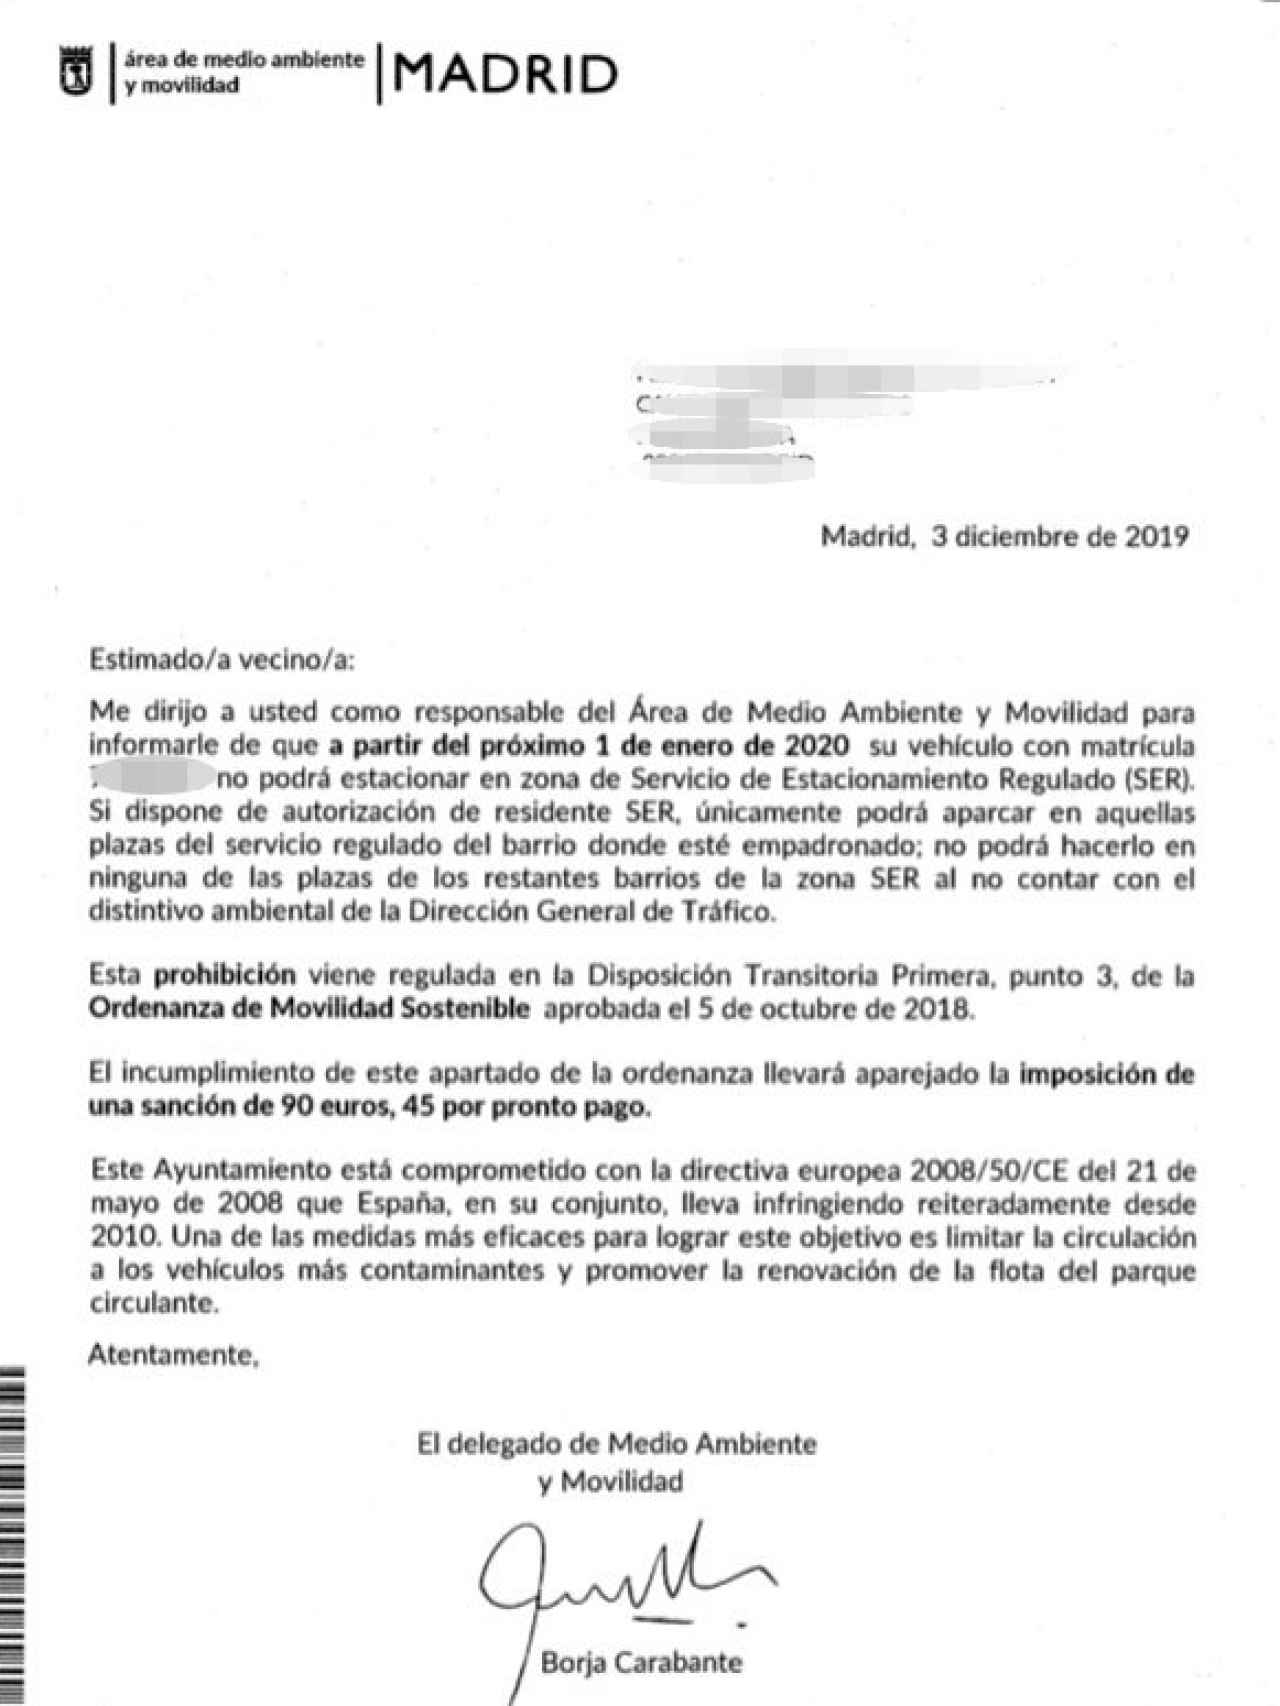 La carta de información enviada por el Ayuntamiento de Madrid.